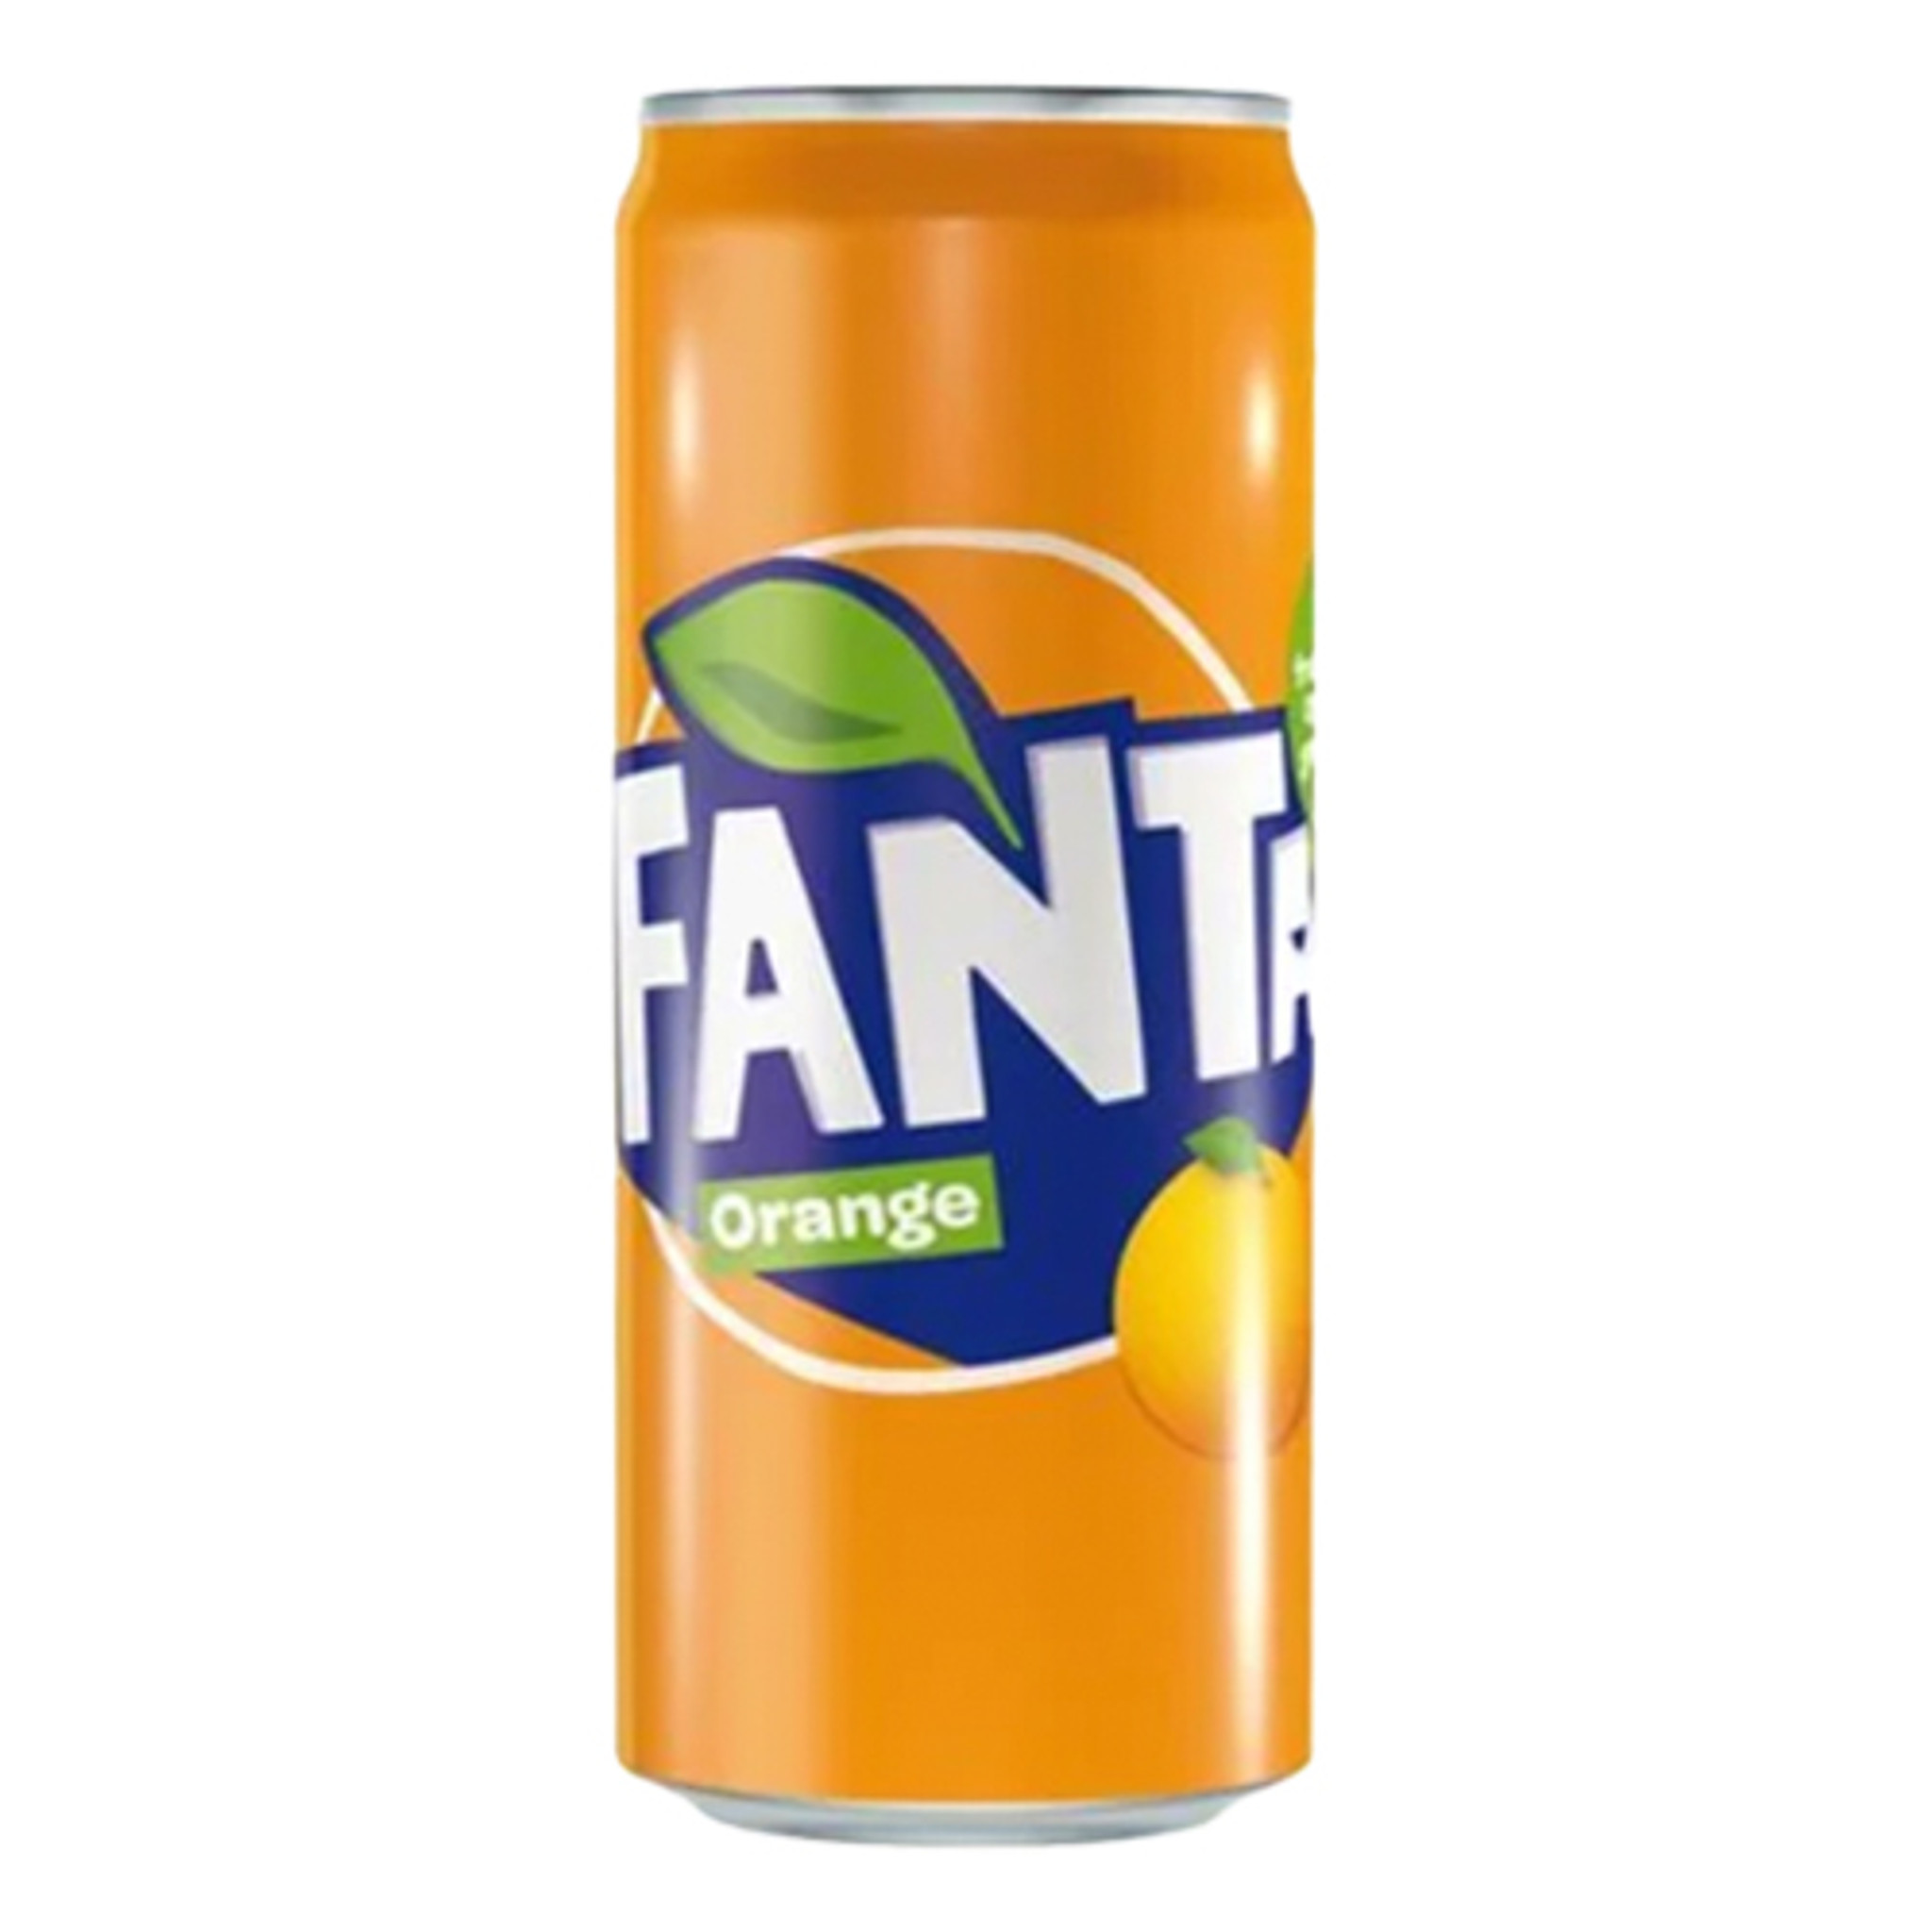 Fanta Orange Soda in Can, 11.2 oz - bottled in Germany - The Taste of  Germany